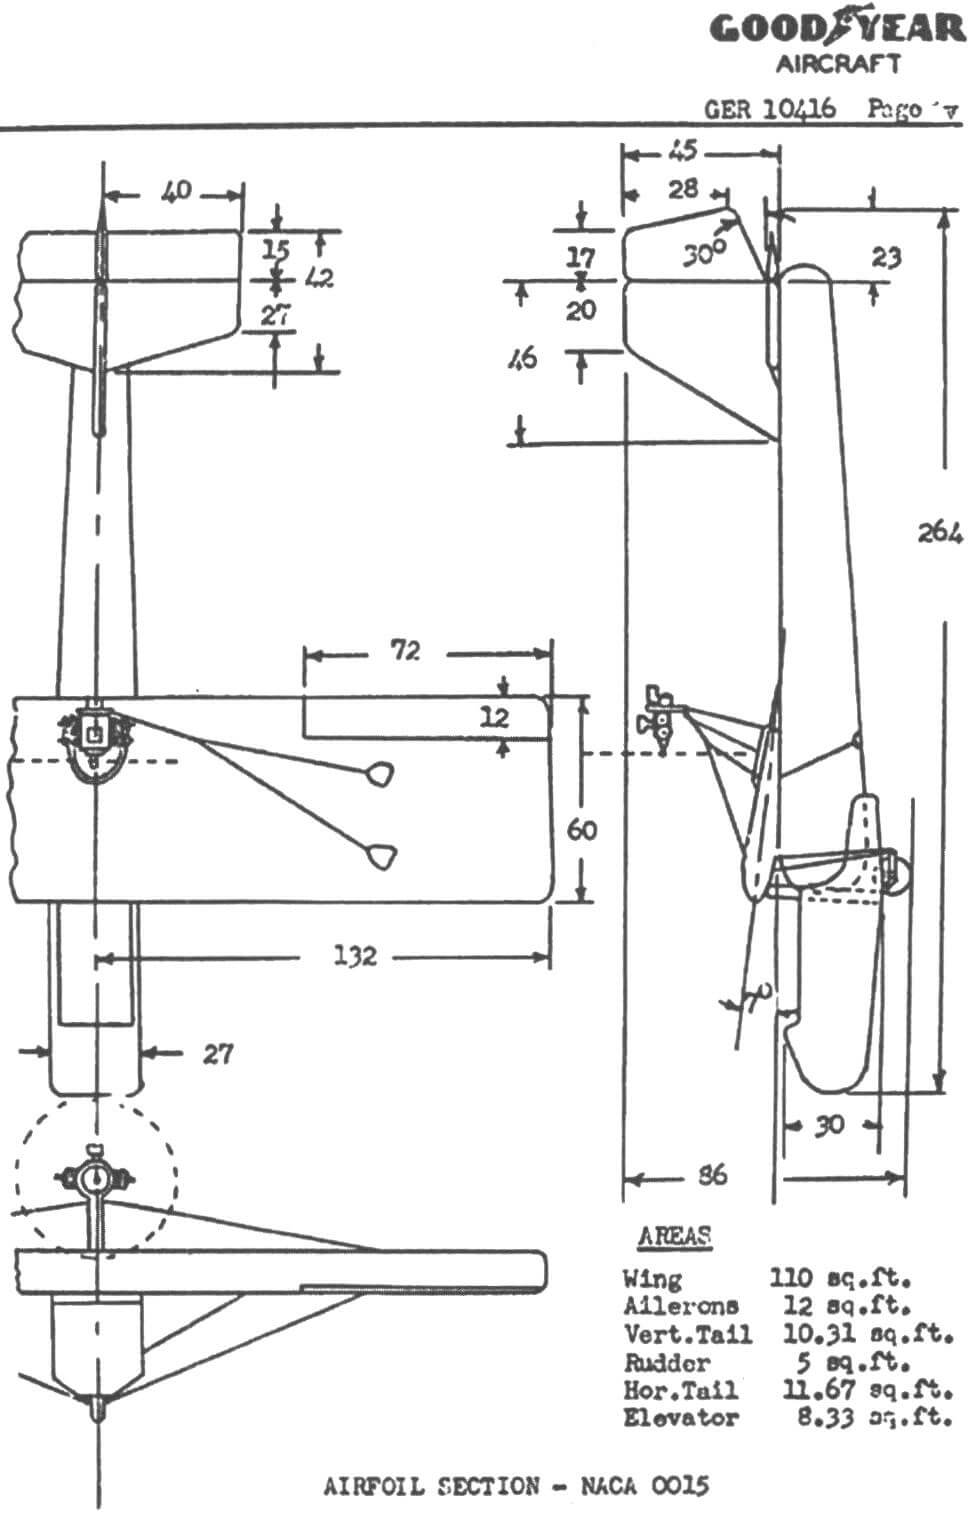 Схема предсерийного надувного самолета Goodyear GA-468 (ХАО-3-GI). Размеры указаны в дюймах. Рисунок из итогового отчета фирмы Goodyear (1961 год)